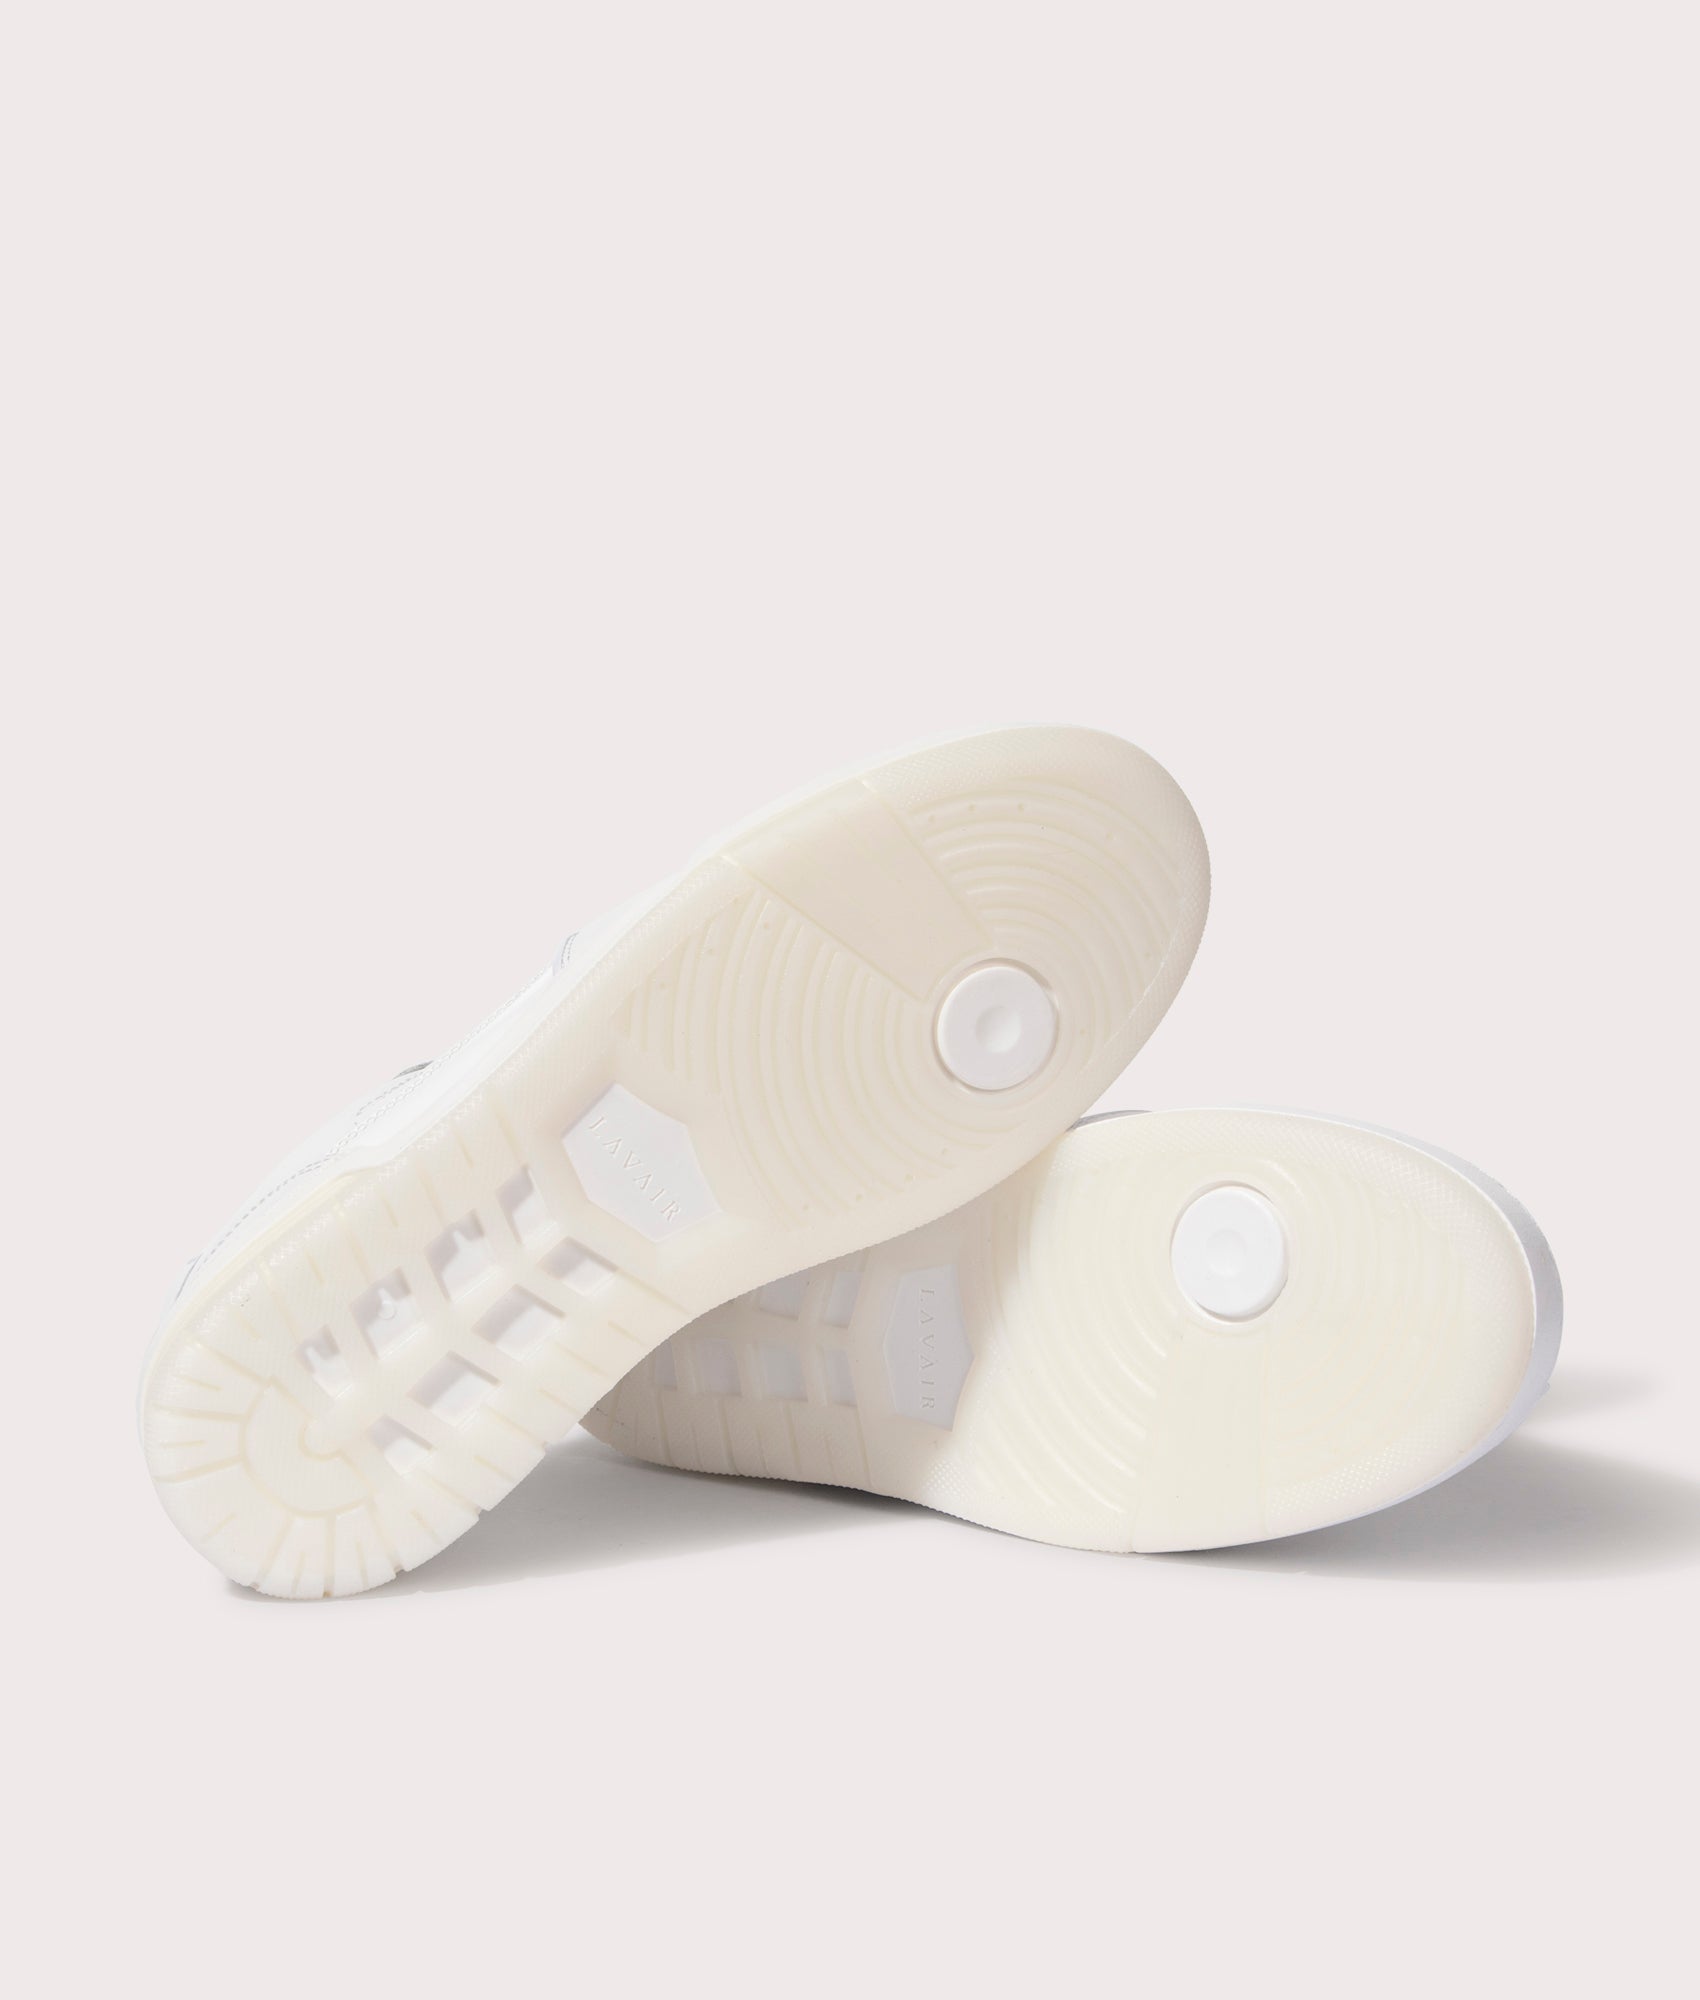 Lavair Vadum - Men Shoes White 6